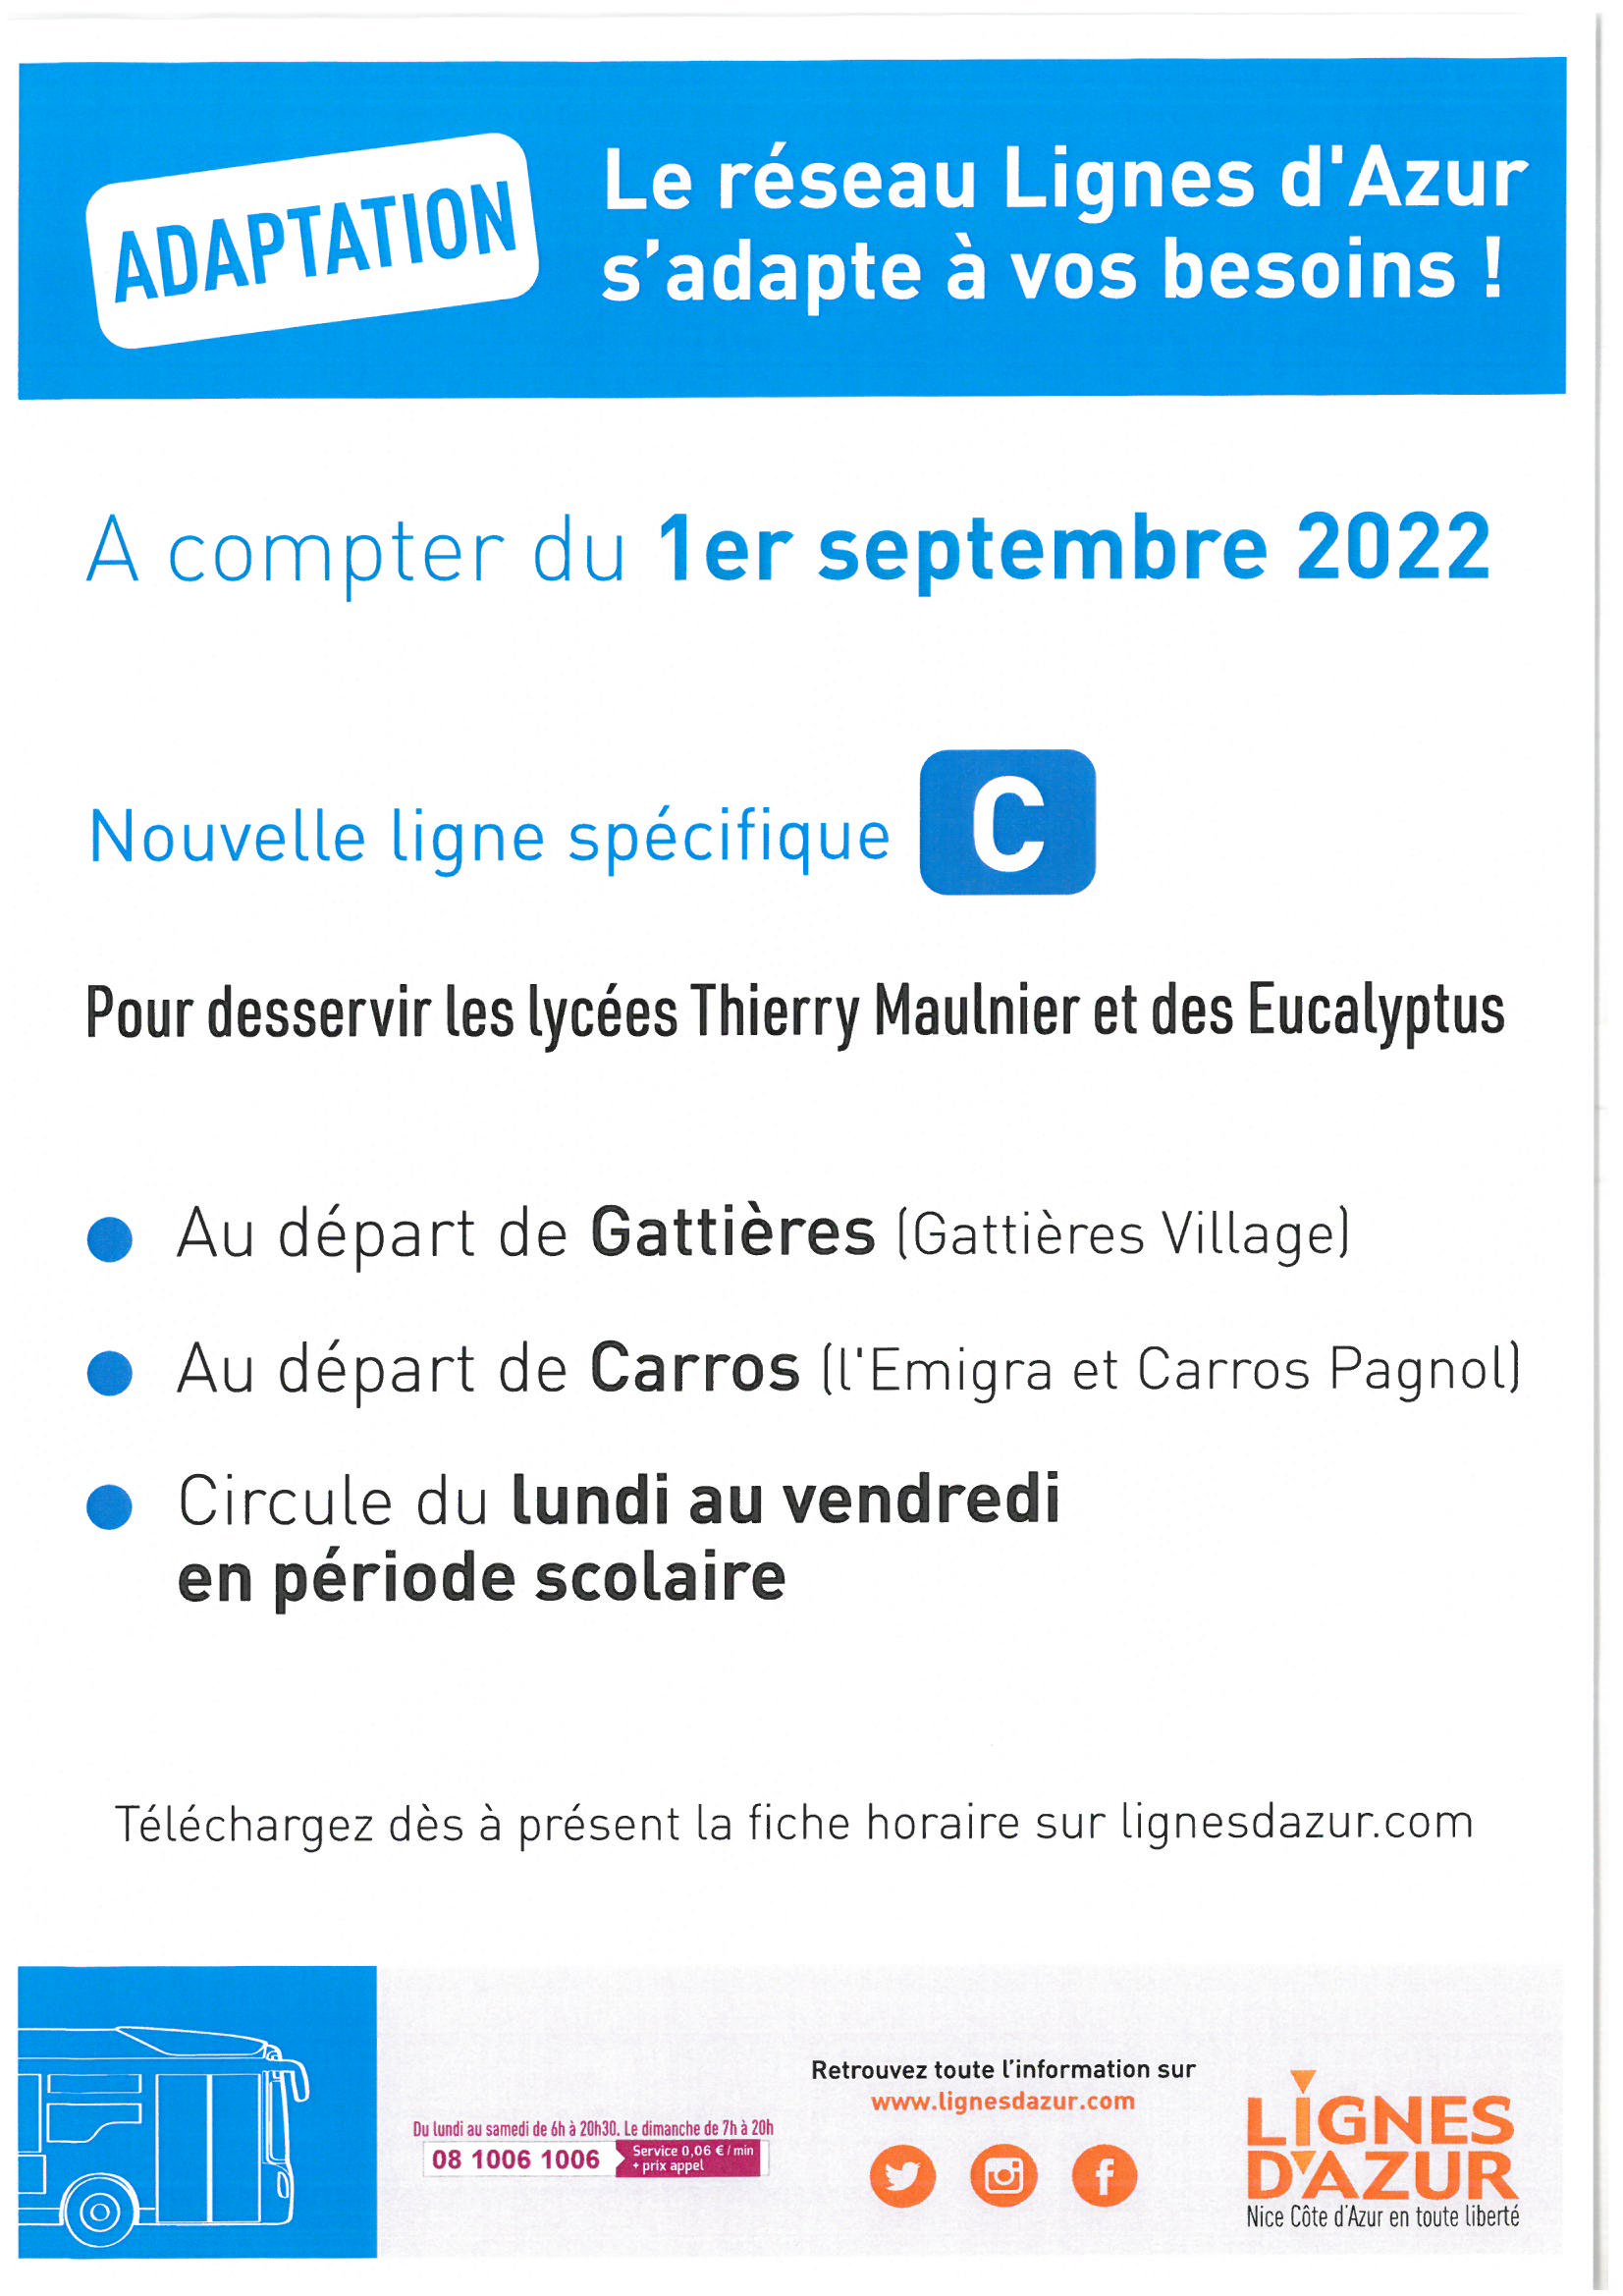 Le réseau Lignes d’Azur s’adapte à vos besoins à compter du 1er septembre 2022!